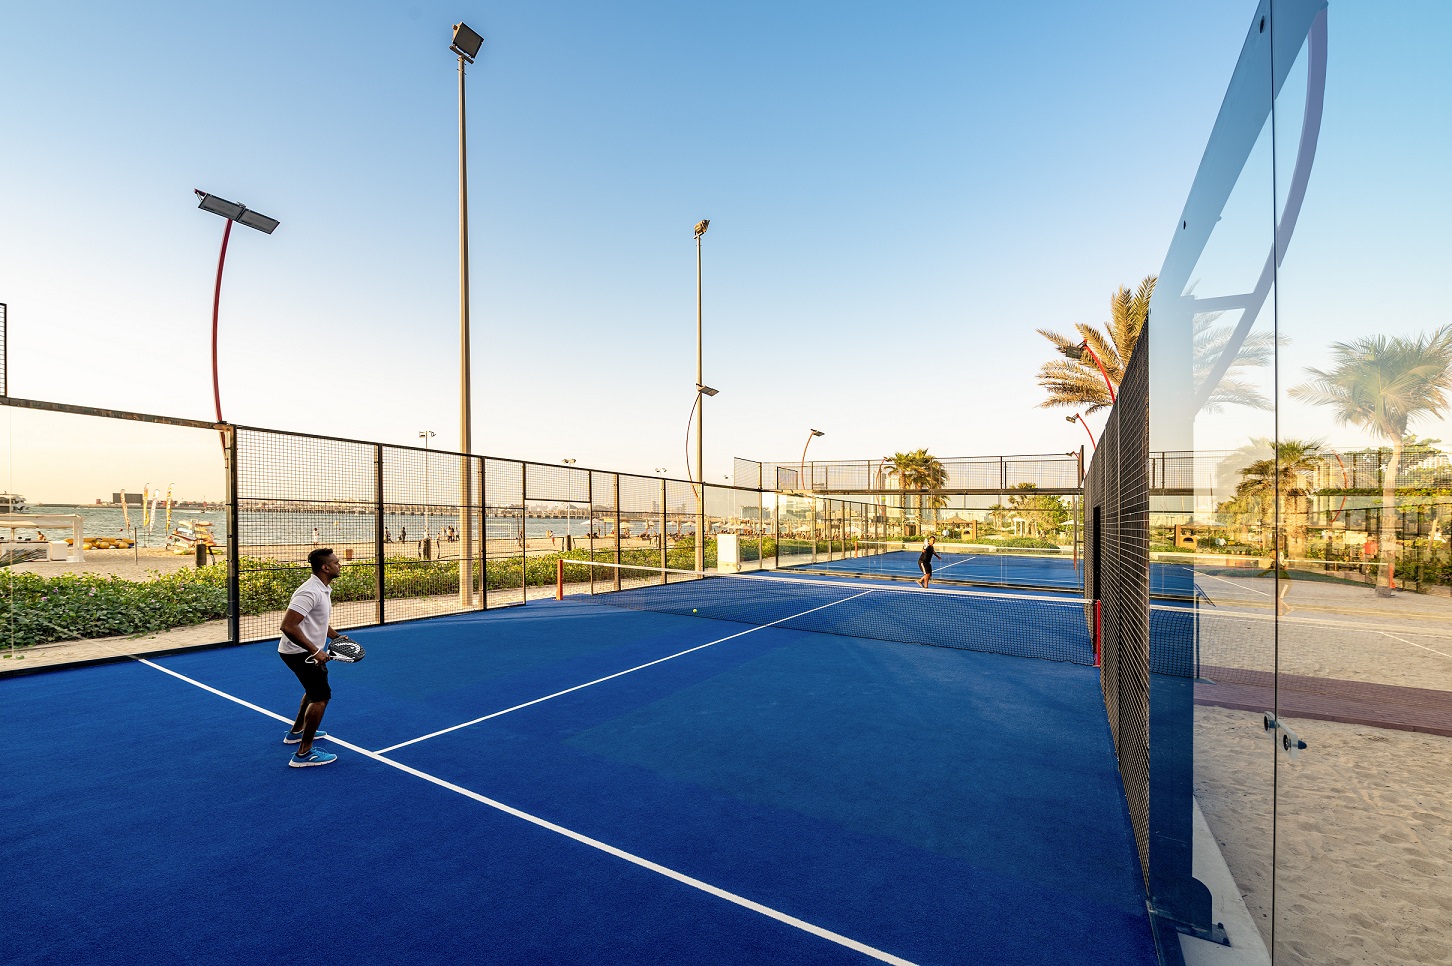 فندق الريتز-كارلتون دبي يفتتح ملعبين جديدن للبادل تنس